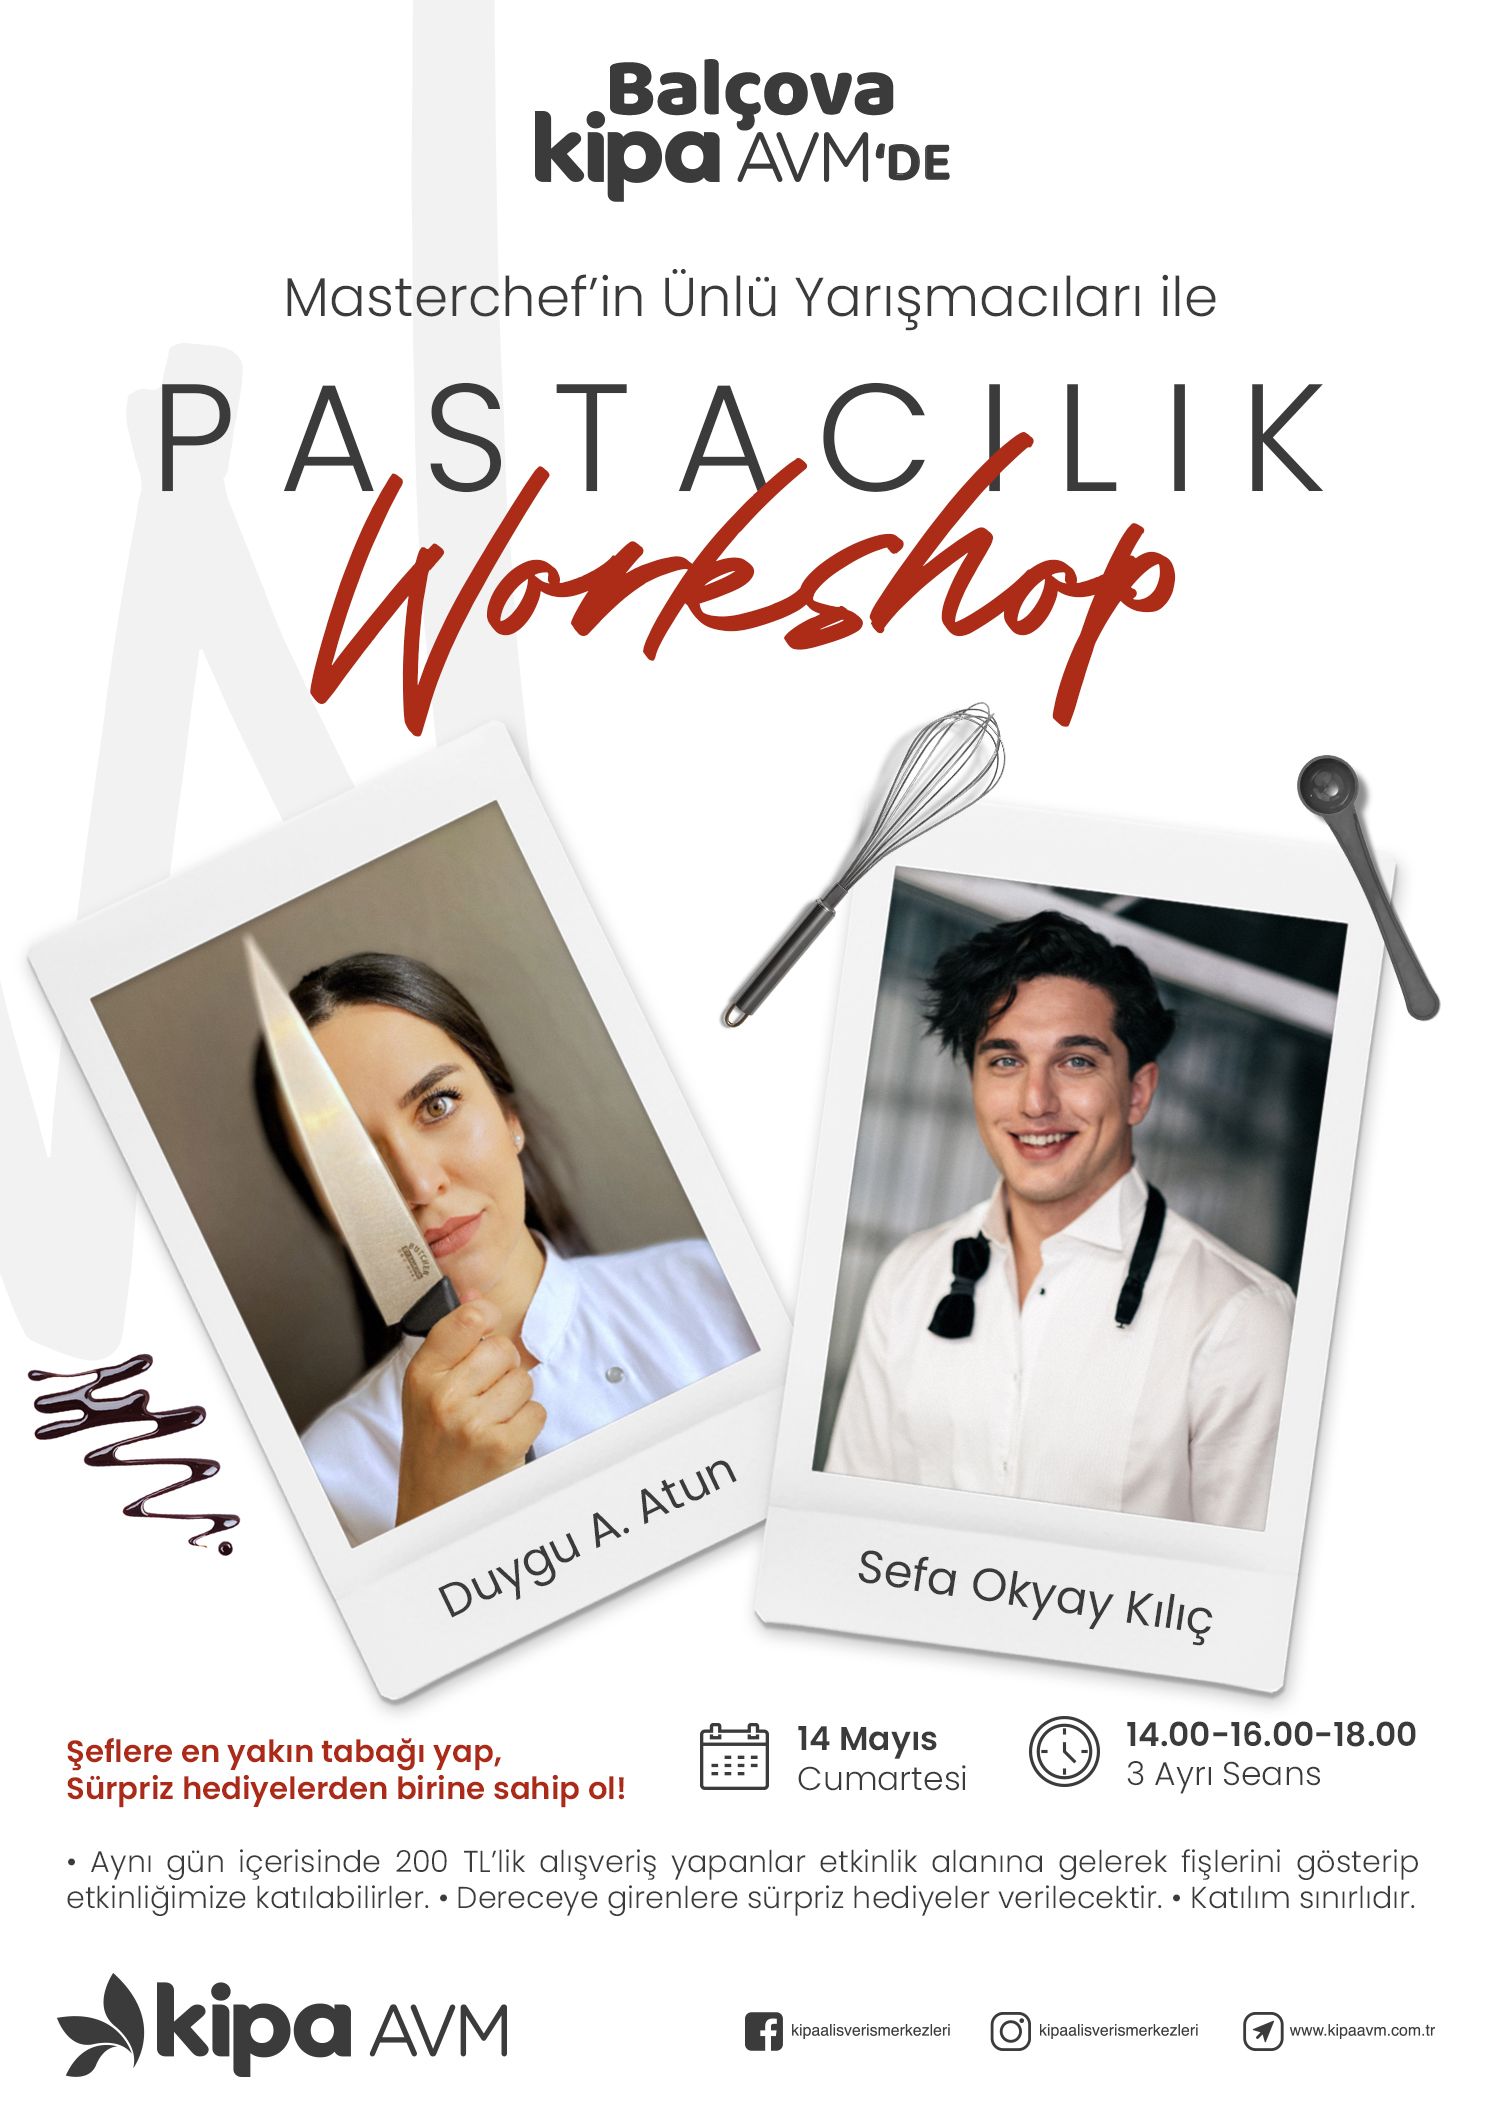 MasterChef'in Ünlü Yarışmacıları ile Pastacılık Workshopu Balçova Kipa AVM'de!